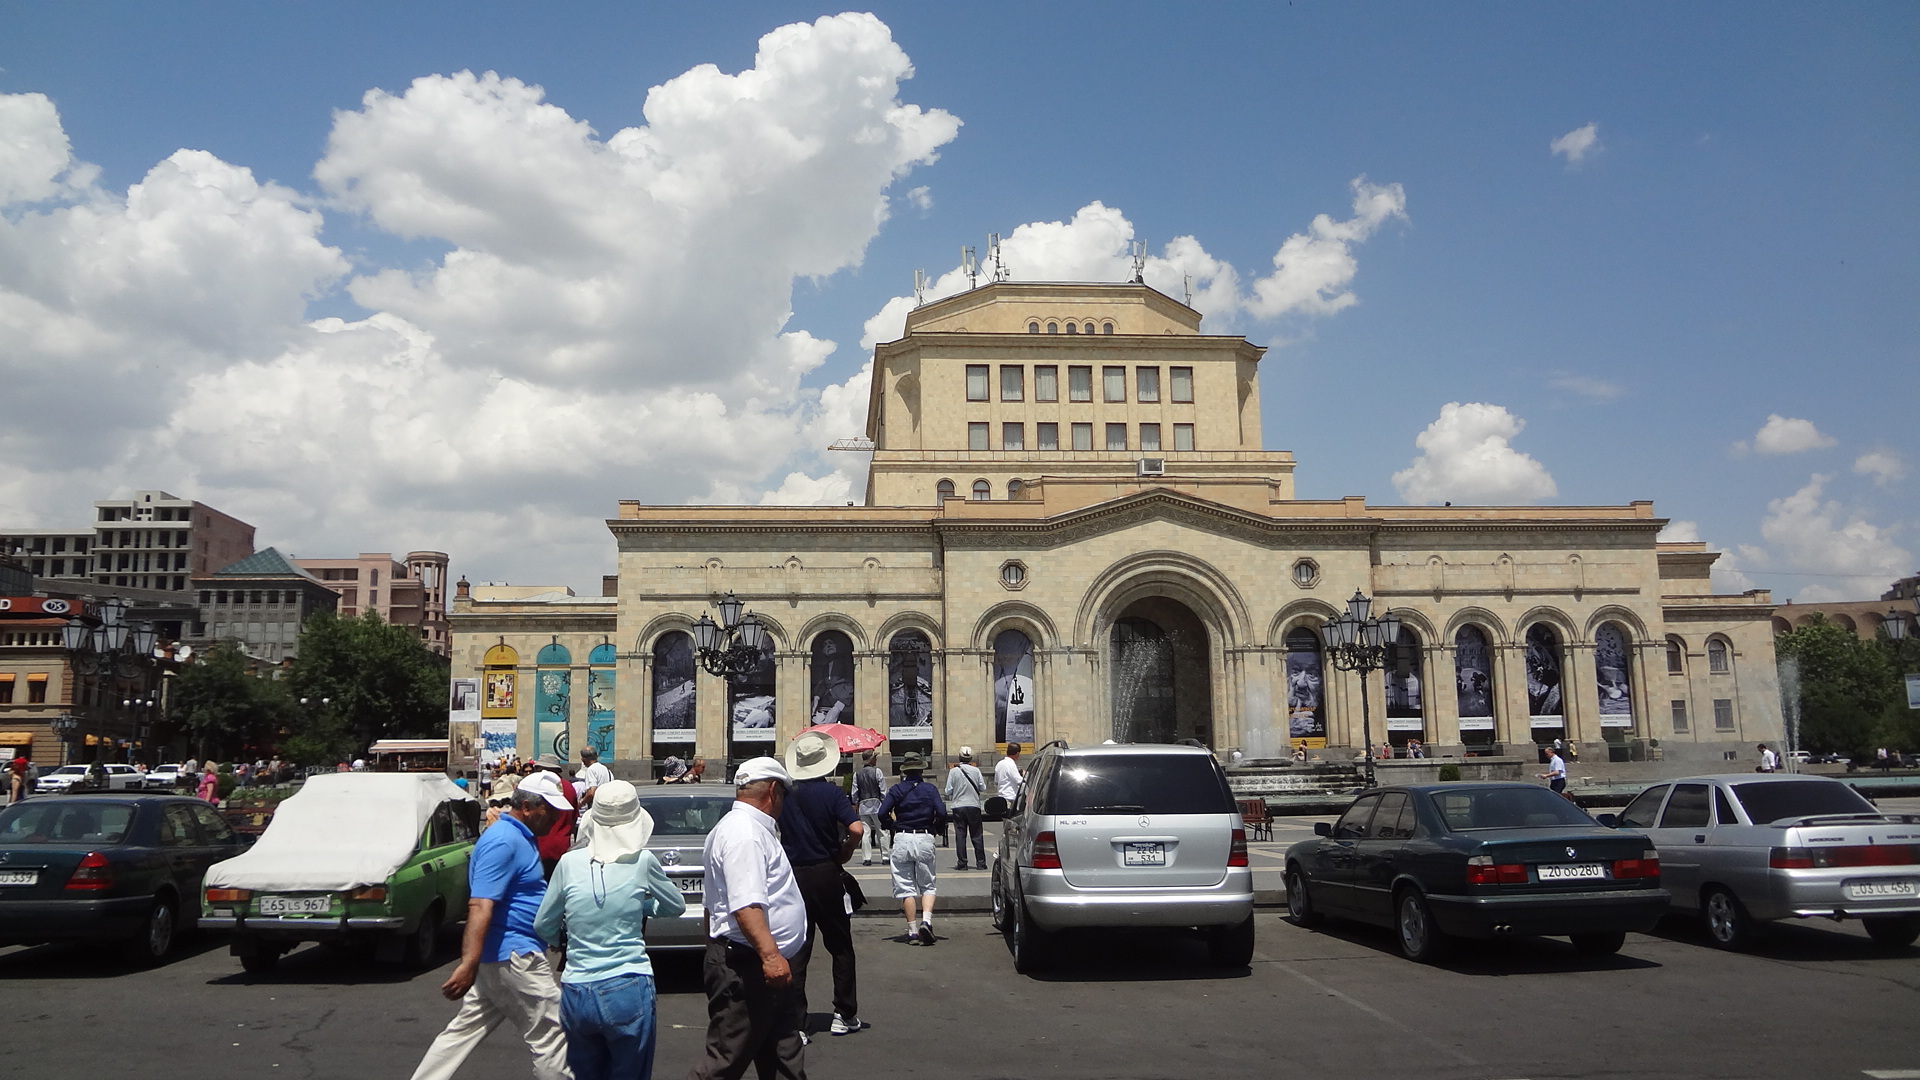 Ереван вокзал. Железнодорожный вокзал Ереван. ЖД вокзал Ереван. Ереван вокзал Ереван ЖД. Вокзал Ереван старый.